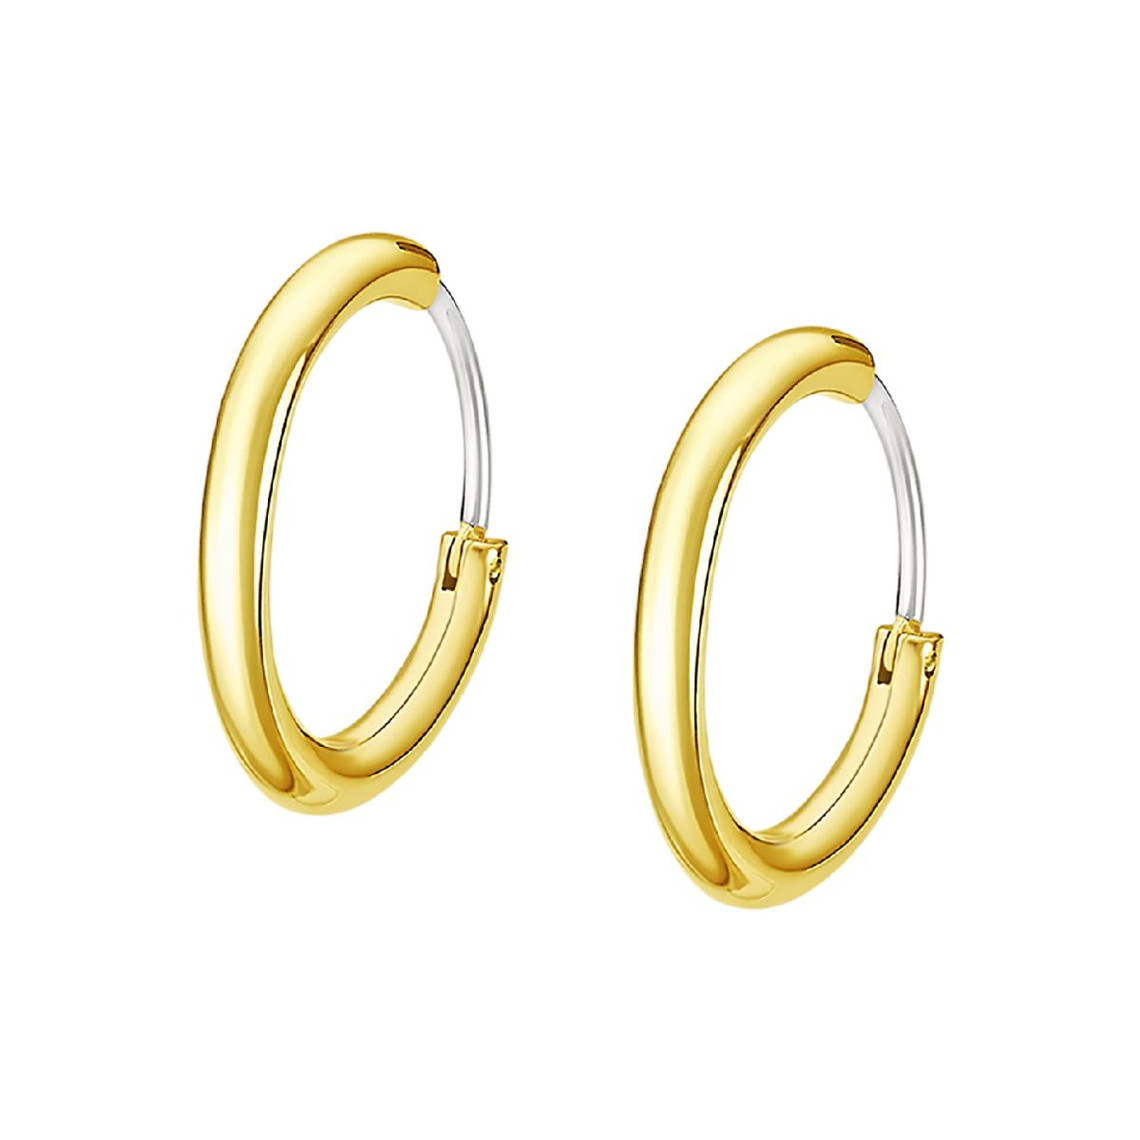 boucles d'oreilles homme lotus style bijoux men's earrings ls2241-4-2 acier doré